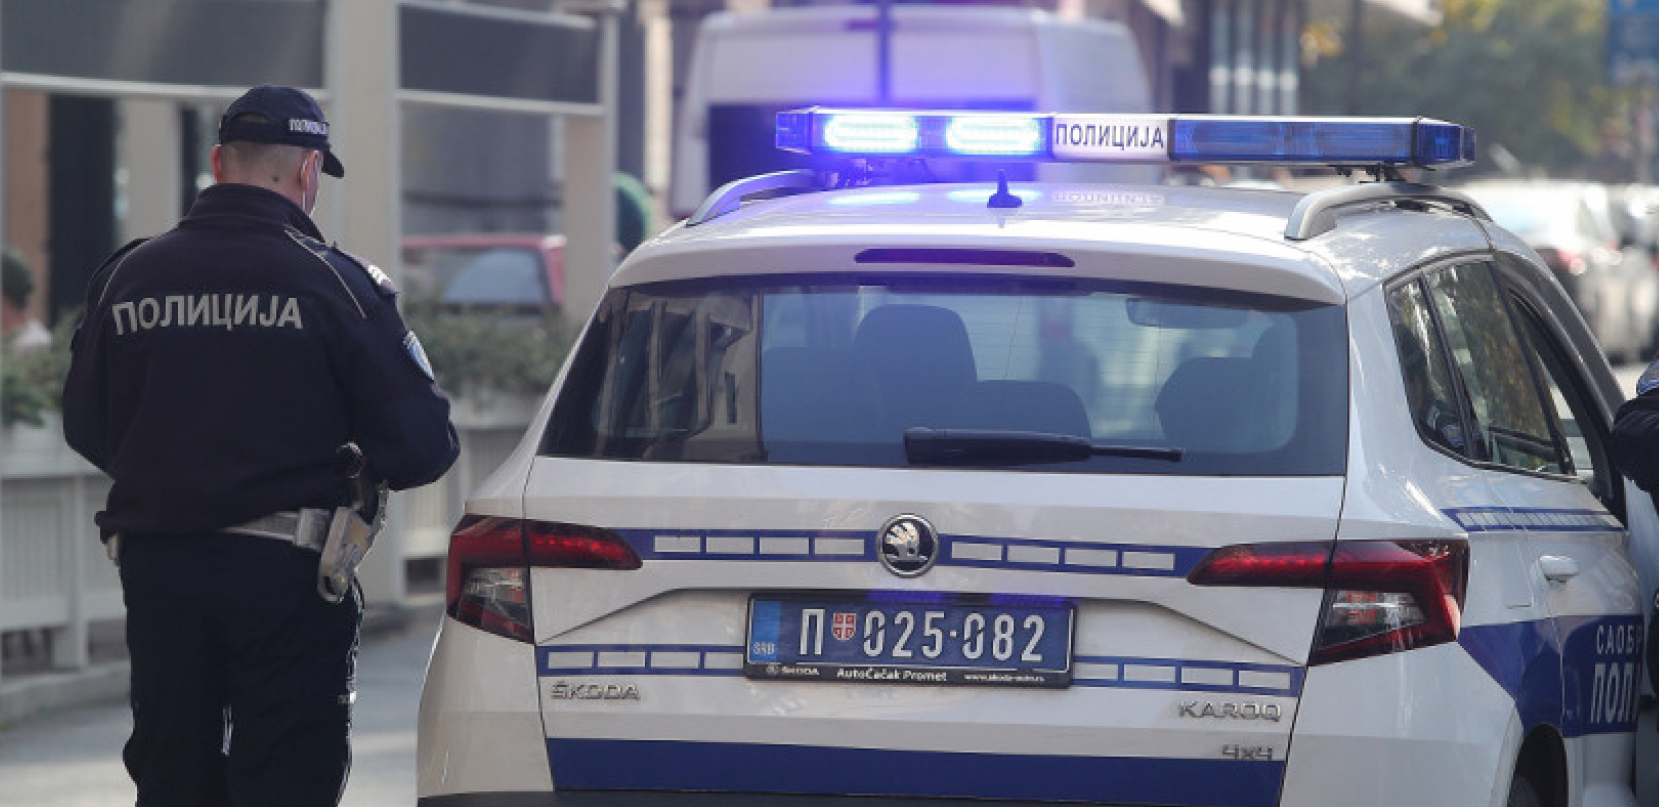 ISKLJUČENJE IZ SAOBRAĆAJA Policija zaustavila muškarca (41) u Beogradu, a onda odmah podnela prekršajnu prijavu